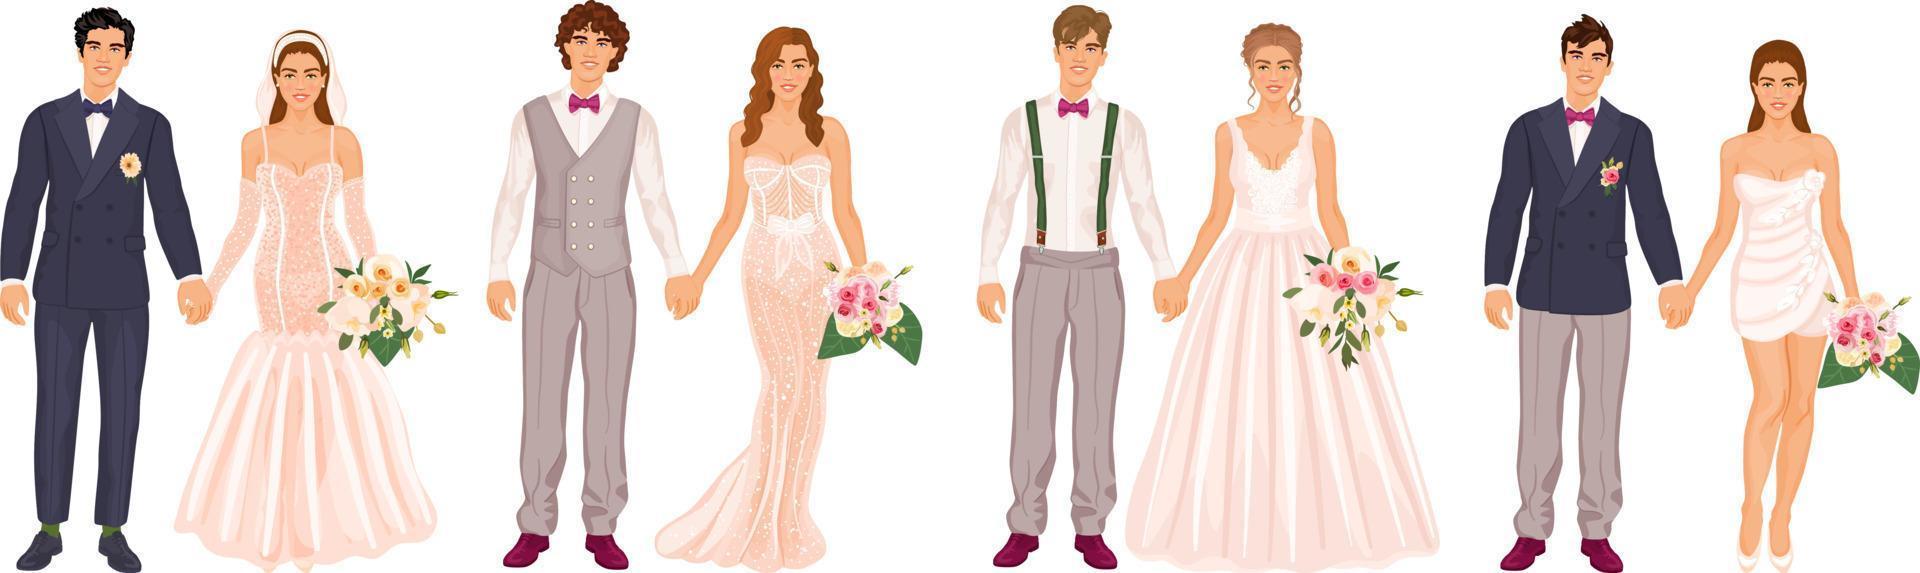 Hochzeit Paare Satz, verschiedene Kleid Stile, Anzüge und Zubehör. Männer und Frauen halten Hände, Hochzeit Zeremonie Tag. Bräute und Bräutigame Sammlung, isoliert auf ein Weiß Hintergrund. vektor